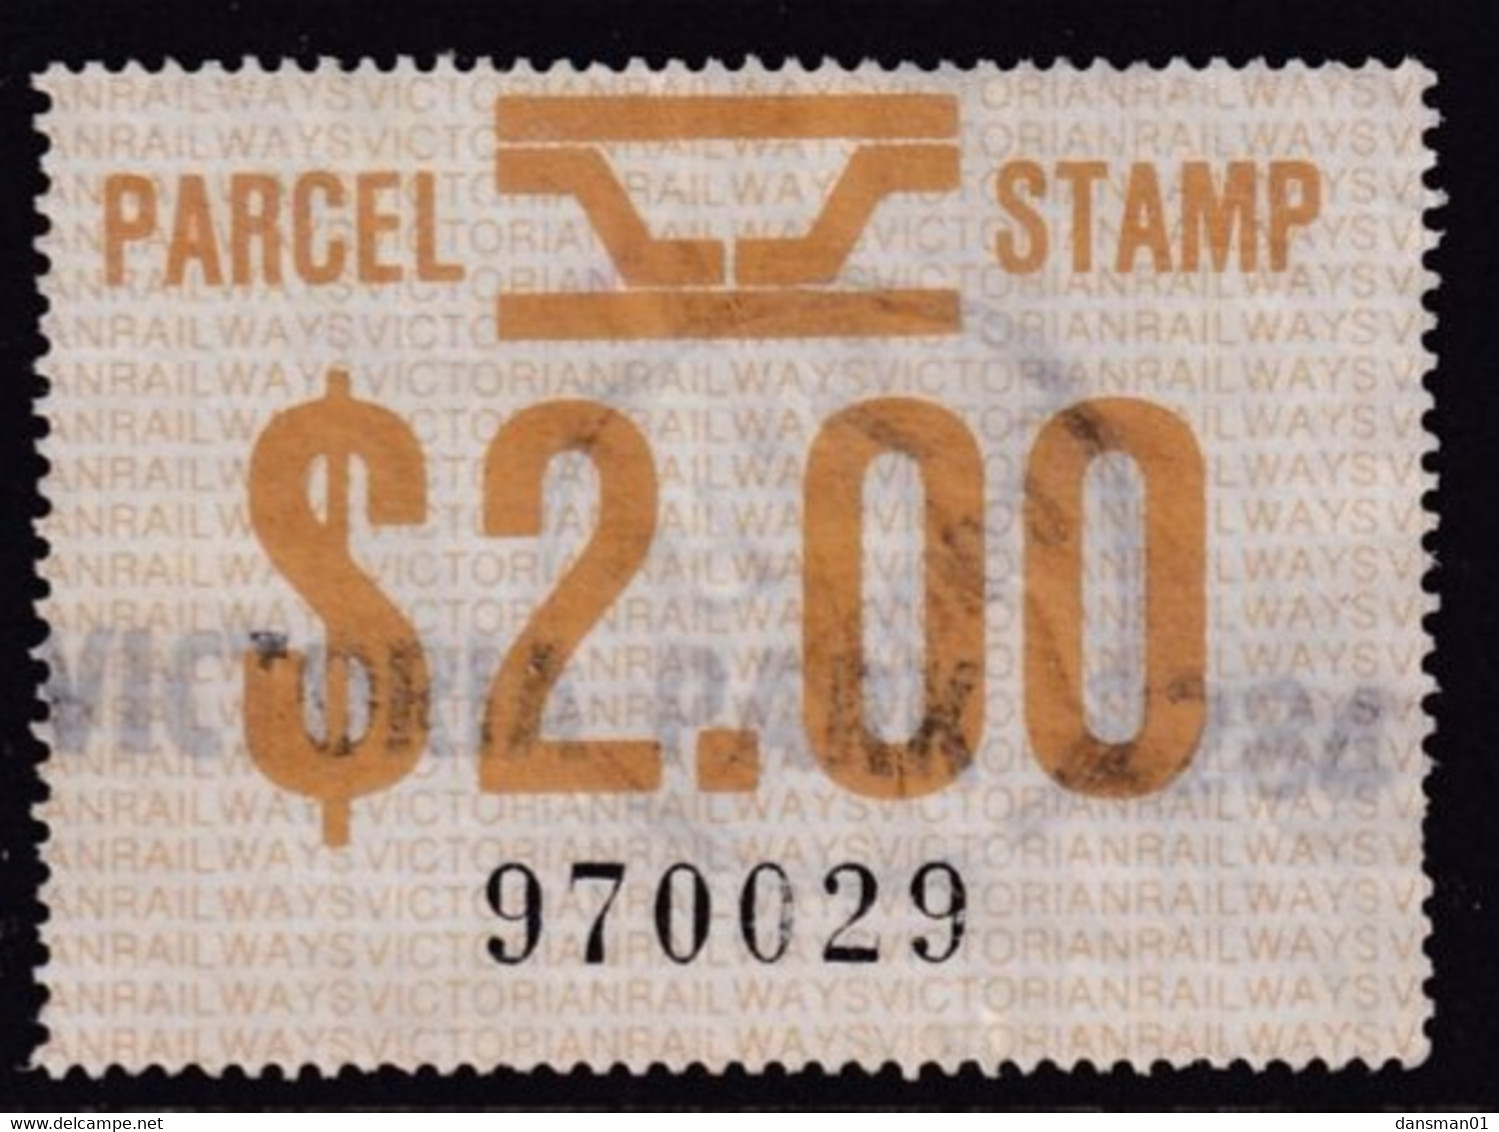 Victoria 1981 Railway Parcel Stamp $2 Used - Variedades Y Curiosidades